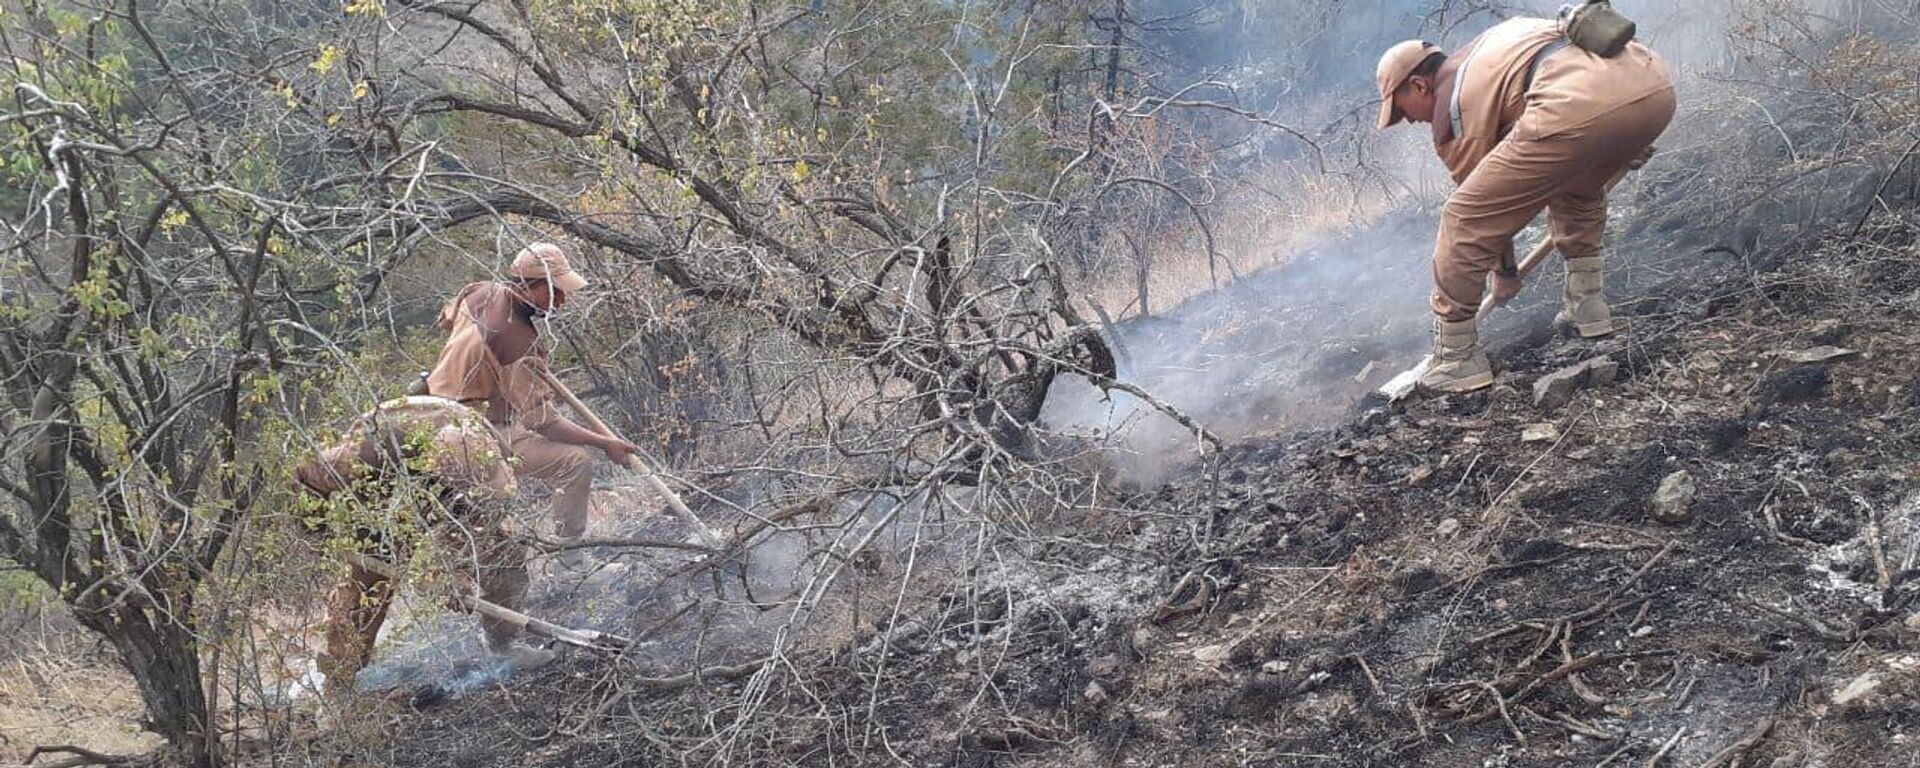 Пожар, возникший в лесных угодьях Зааминского района, потушен - Sputnik Узбекистан, 1920, 02.08.2021